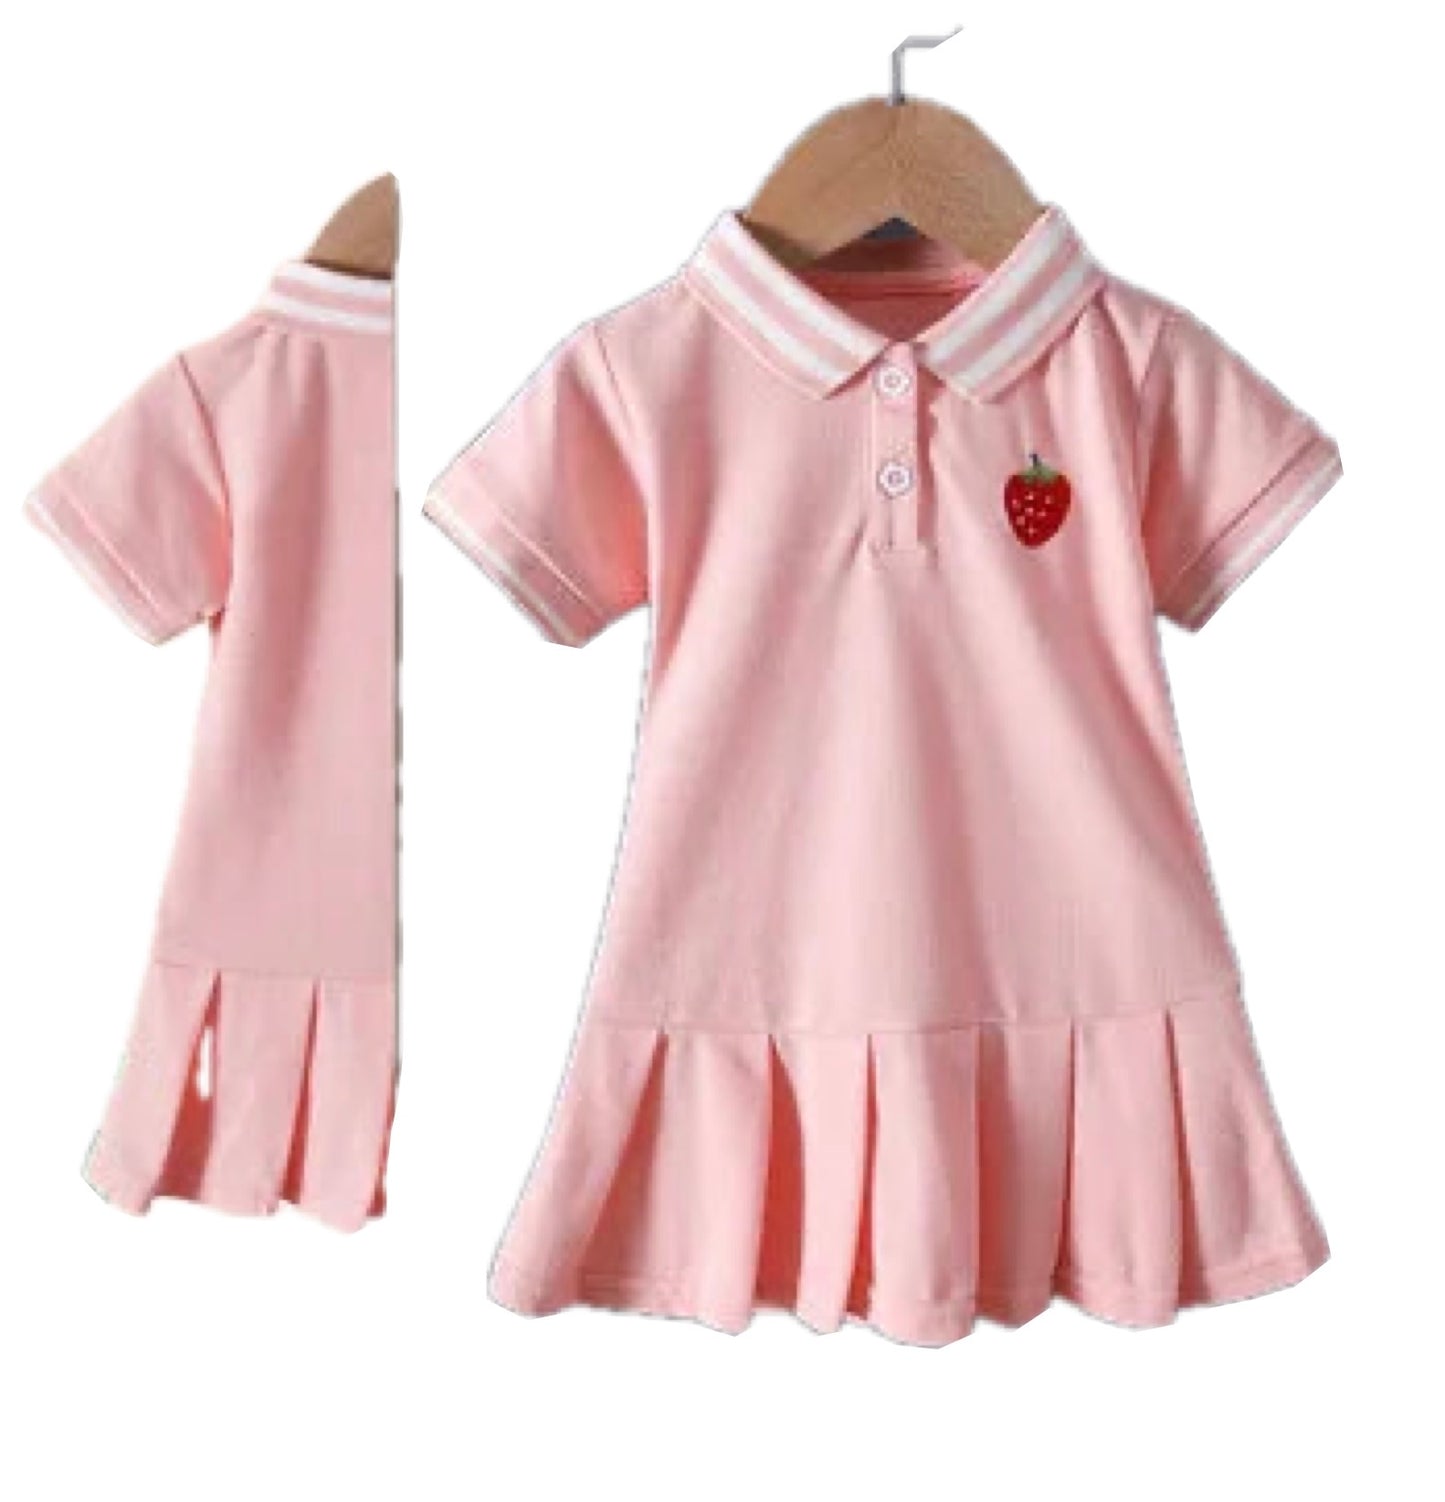 Girls Pink Tennis style Summer Dress